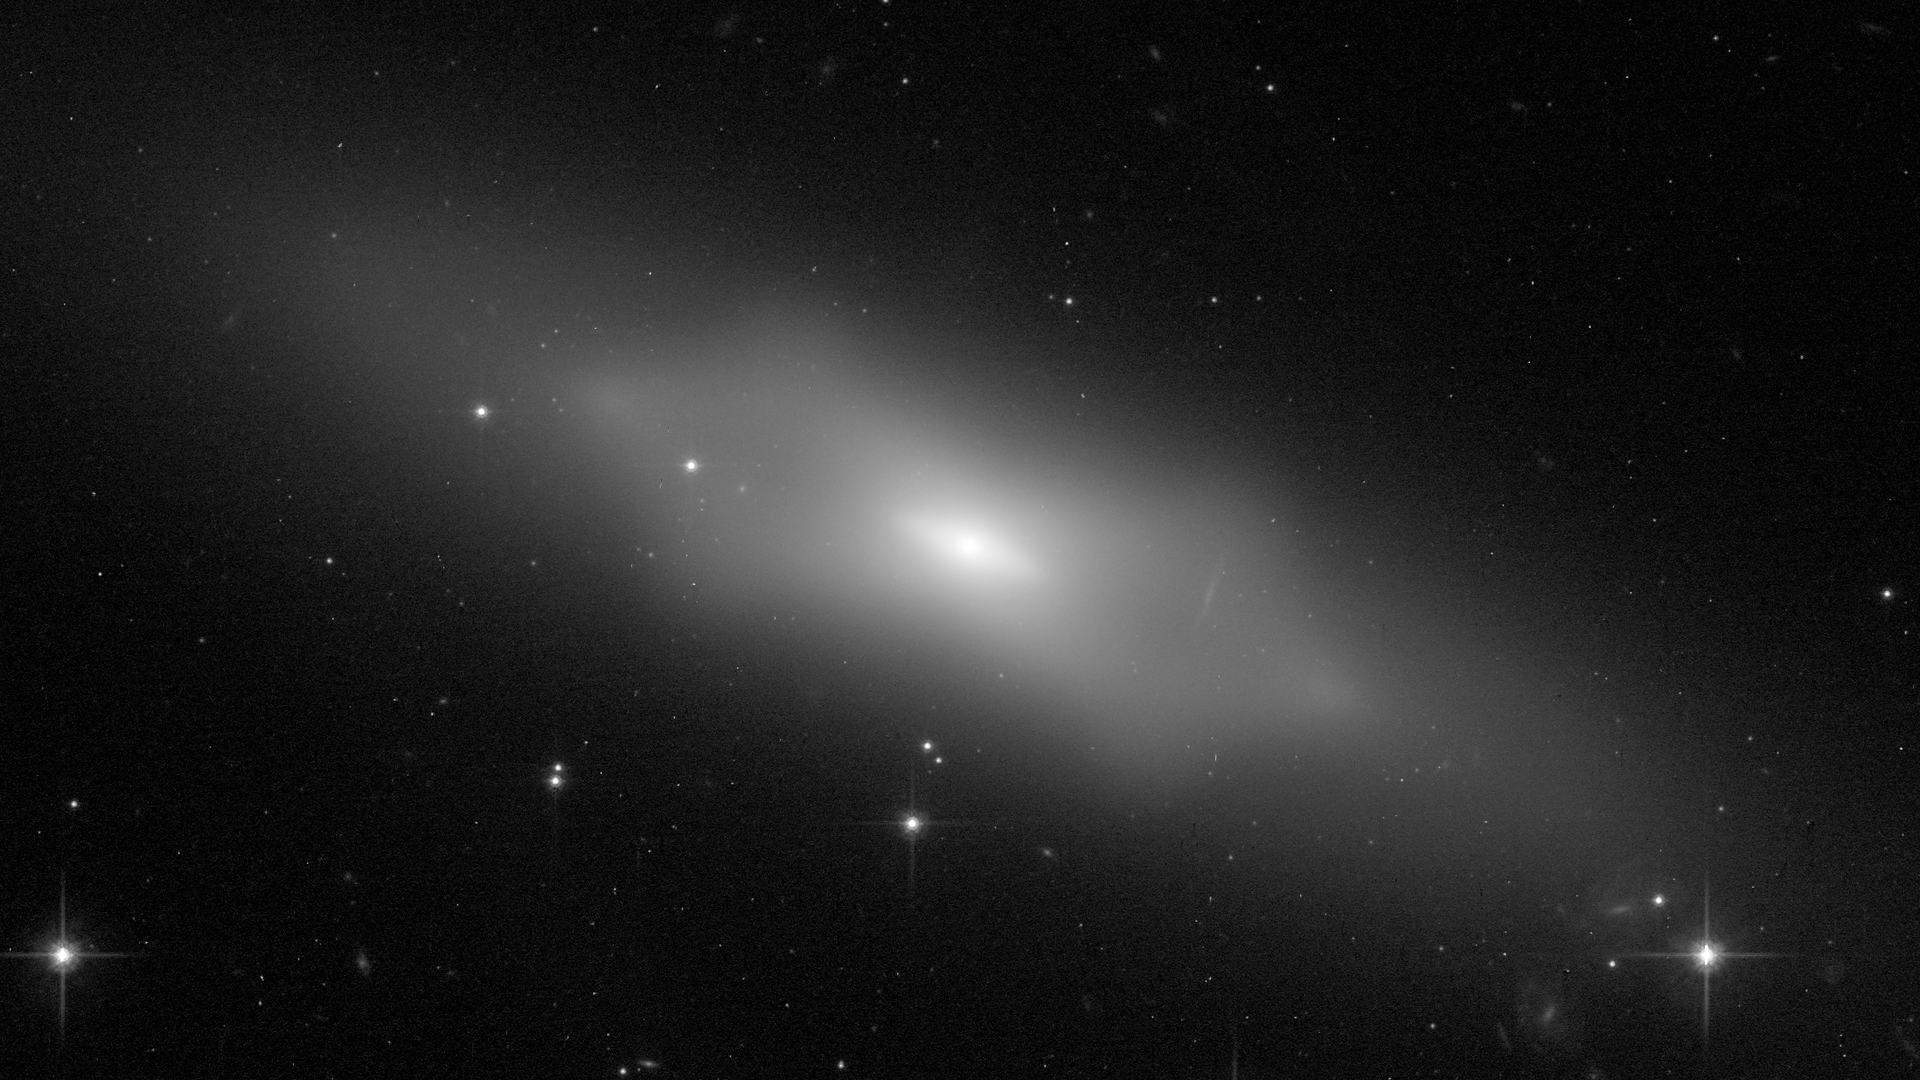 Hubble’s celestial peanut